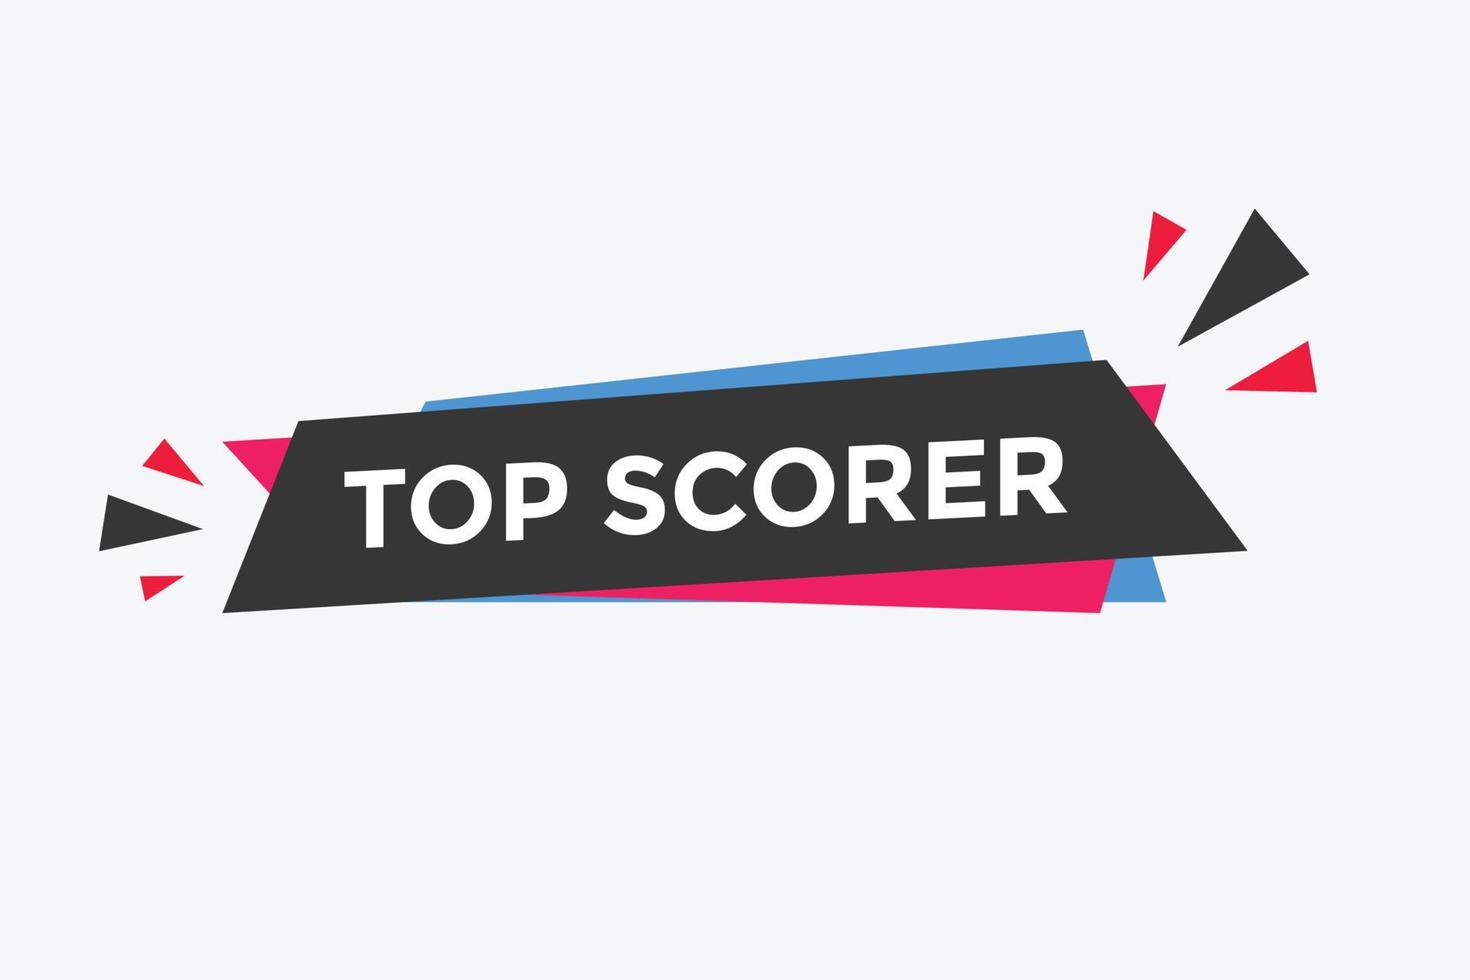 top scorer text button. speech bubble. top scorer Colorful web banner. vector illustration